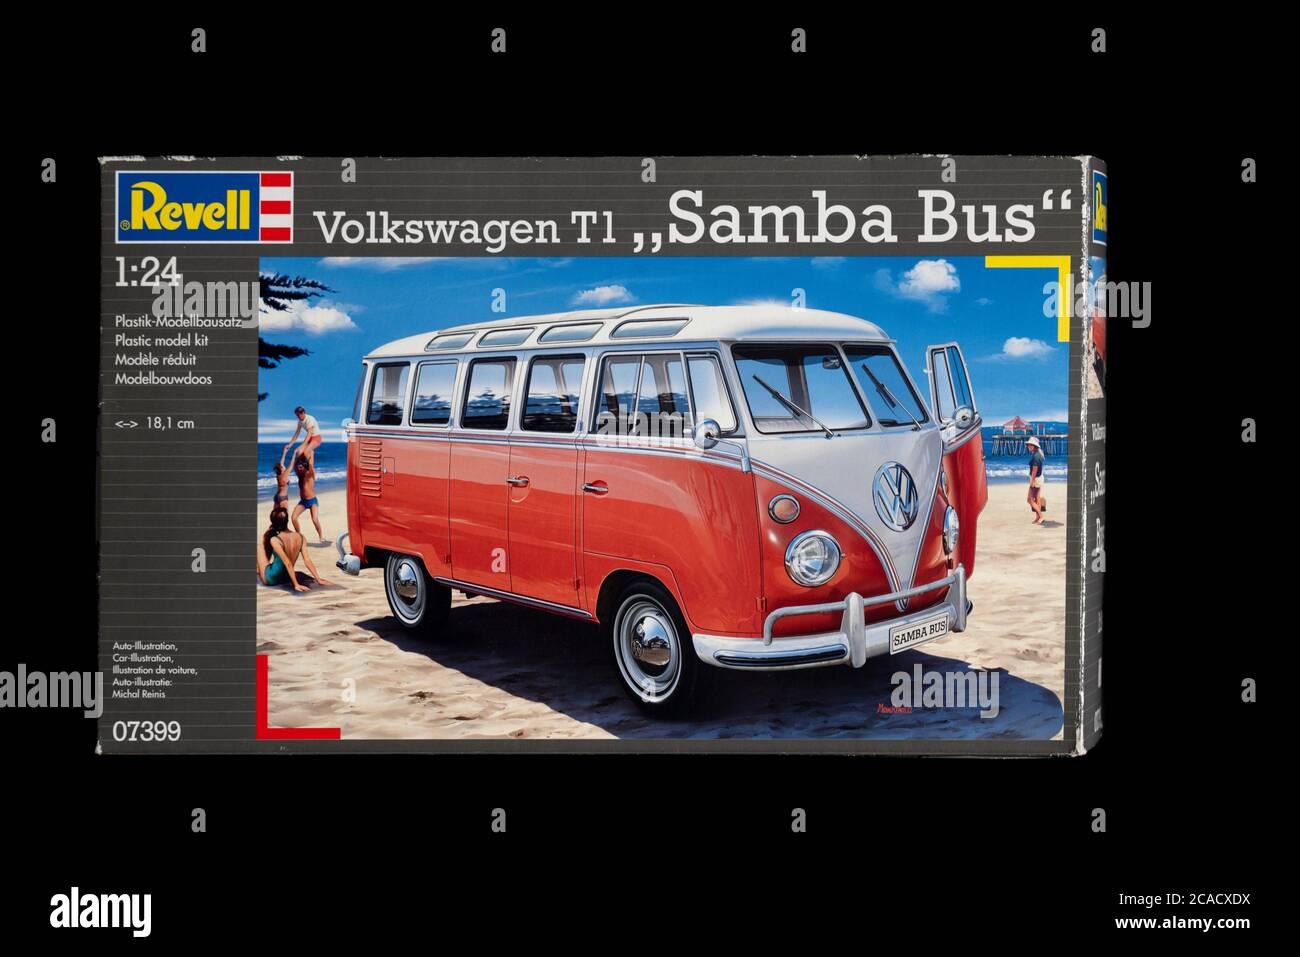 Revell Volkswagen T1 Samba Bus model kit. Stock Photo